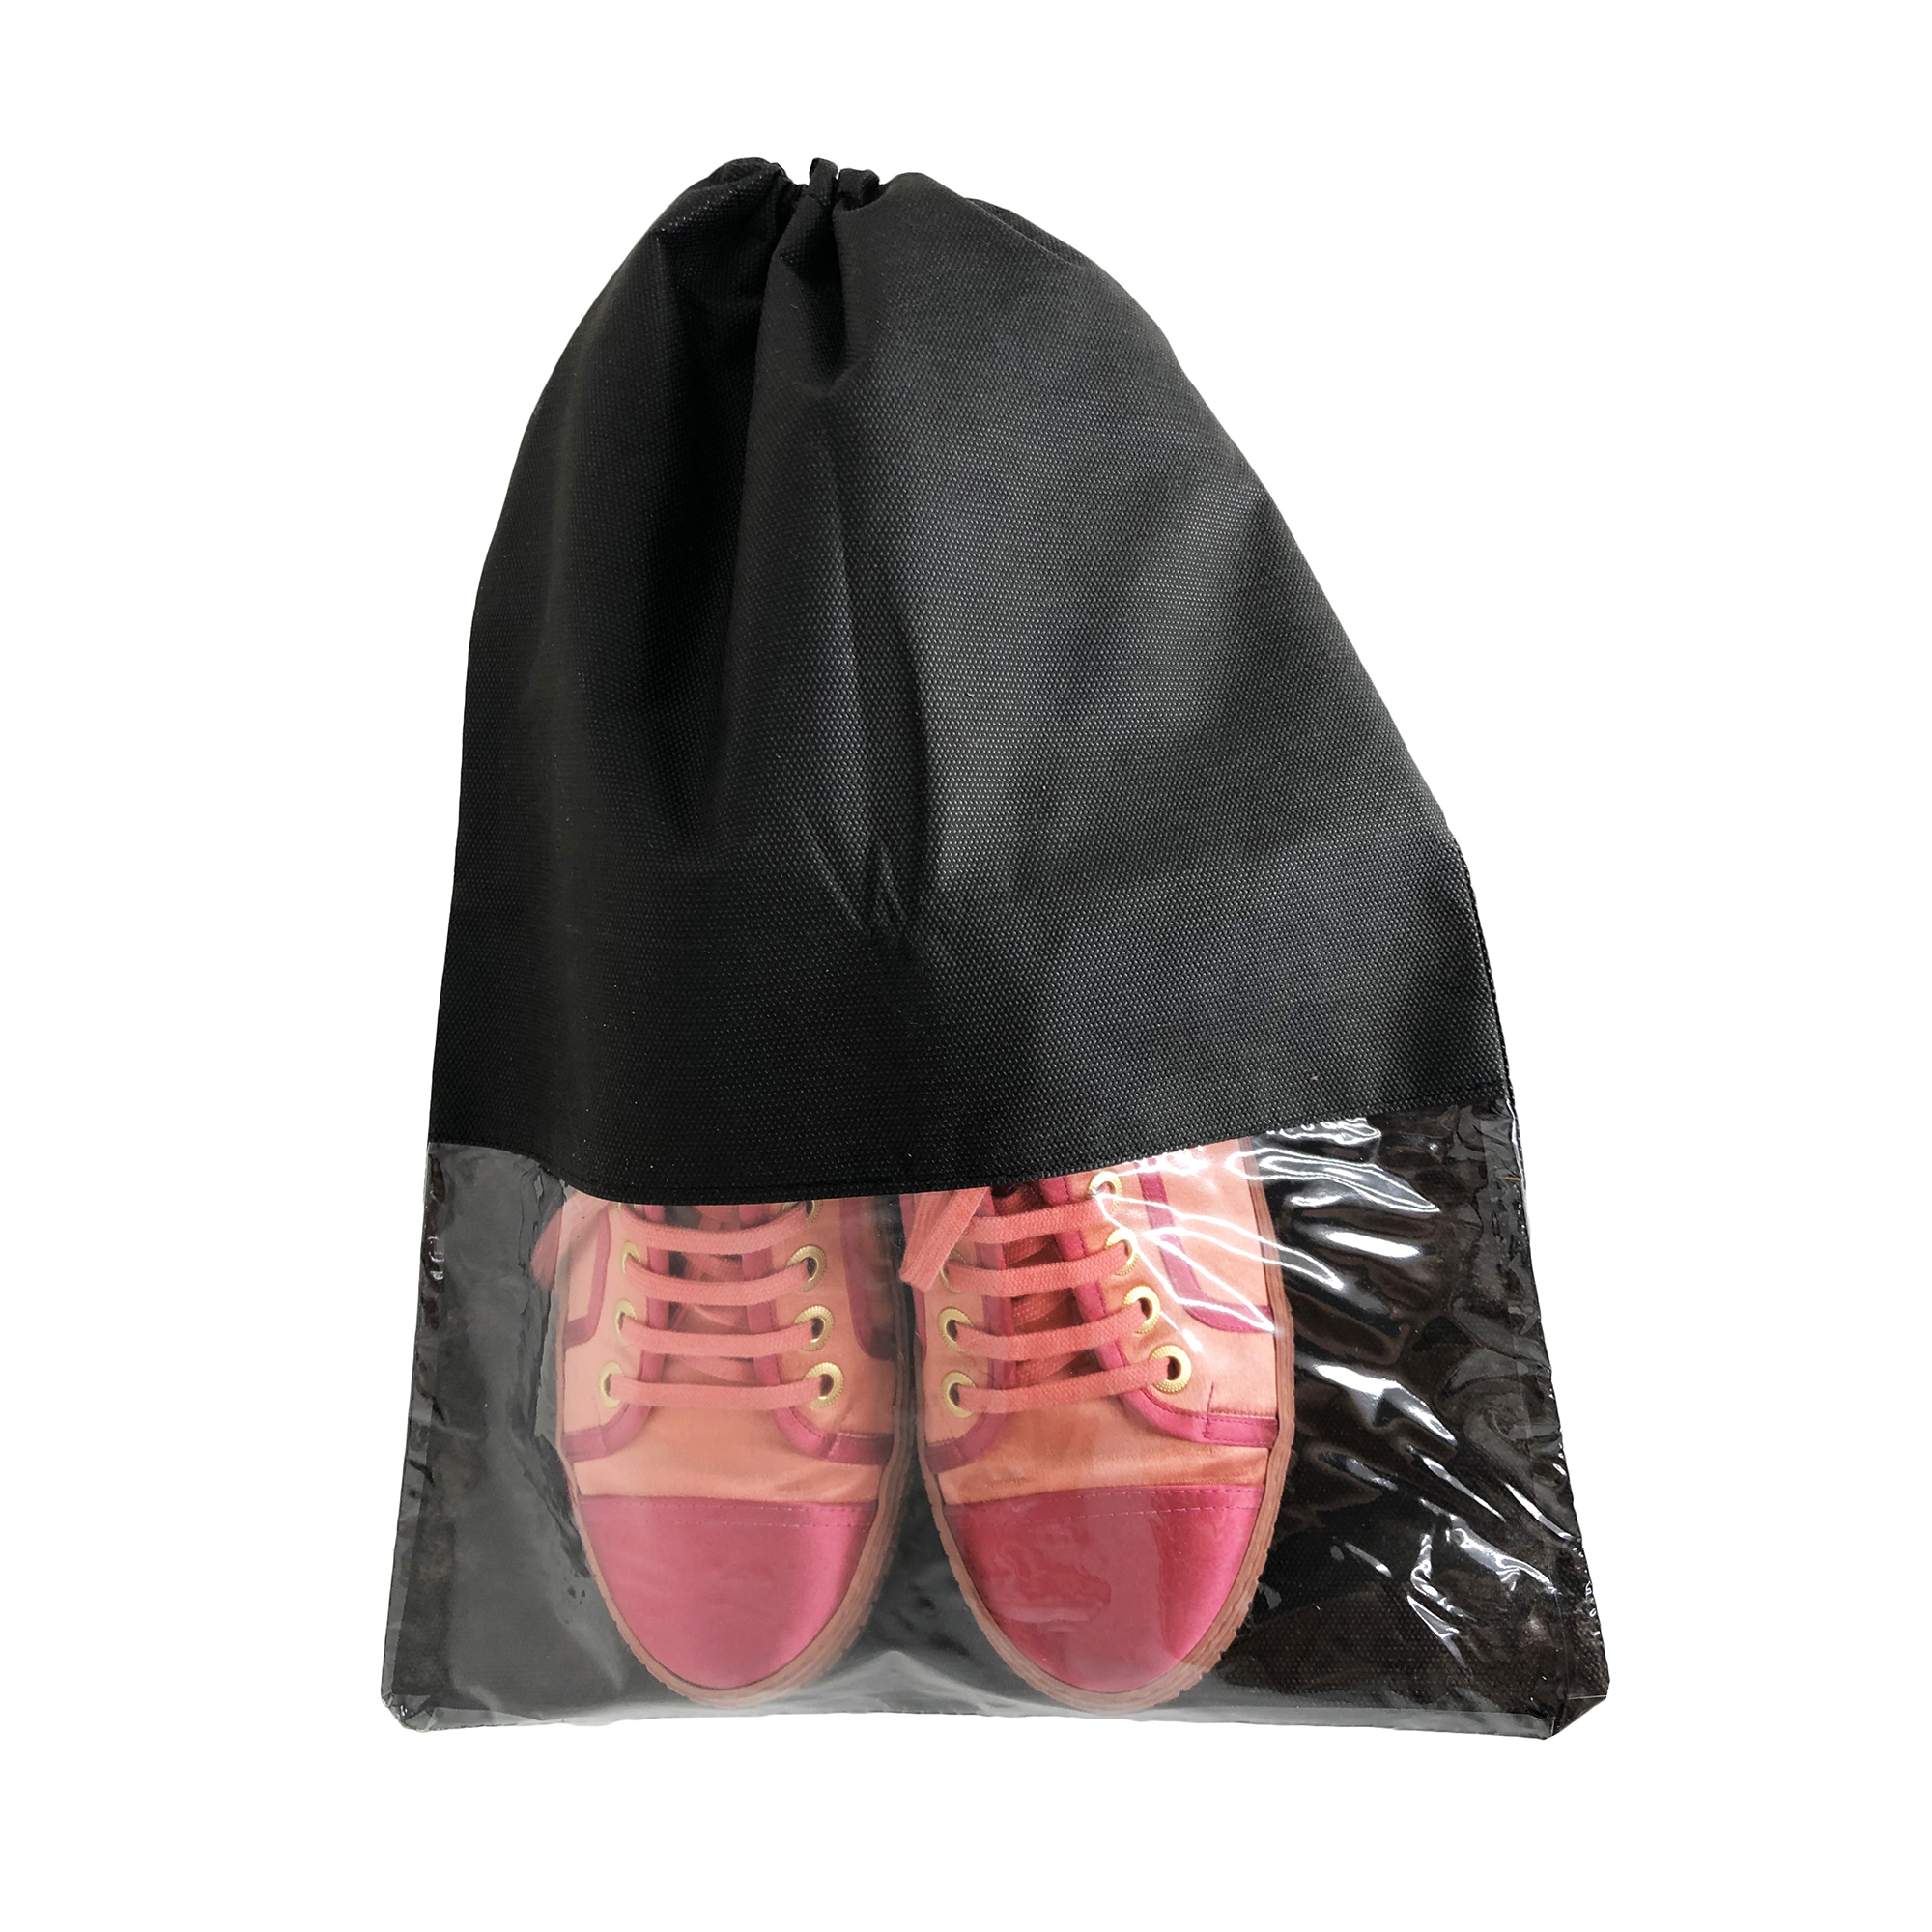 Мешок для обуви Homsu и вещей большой Premium Black - фото 4